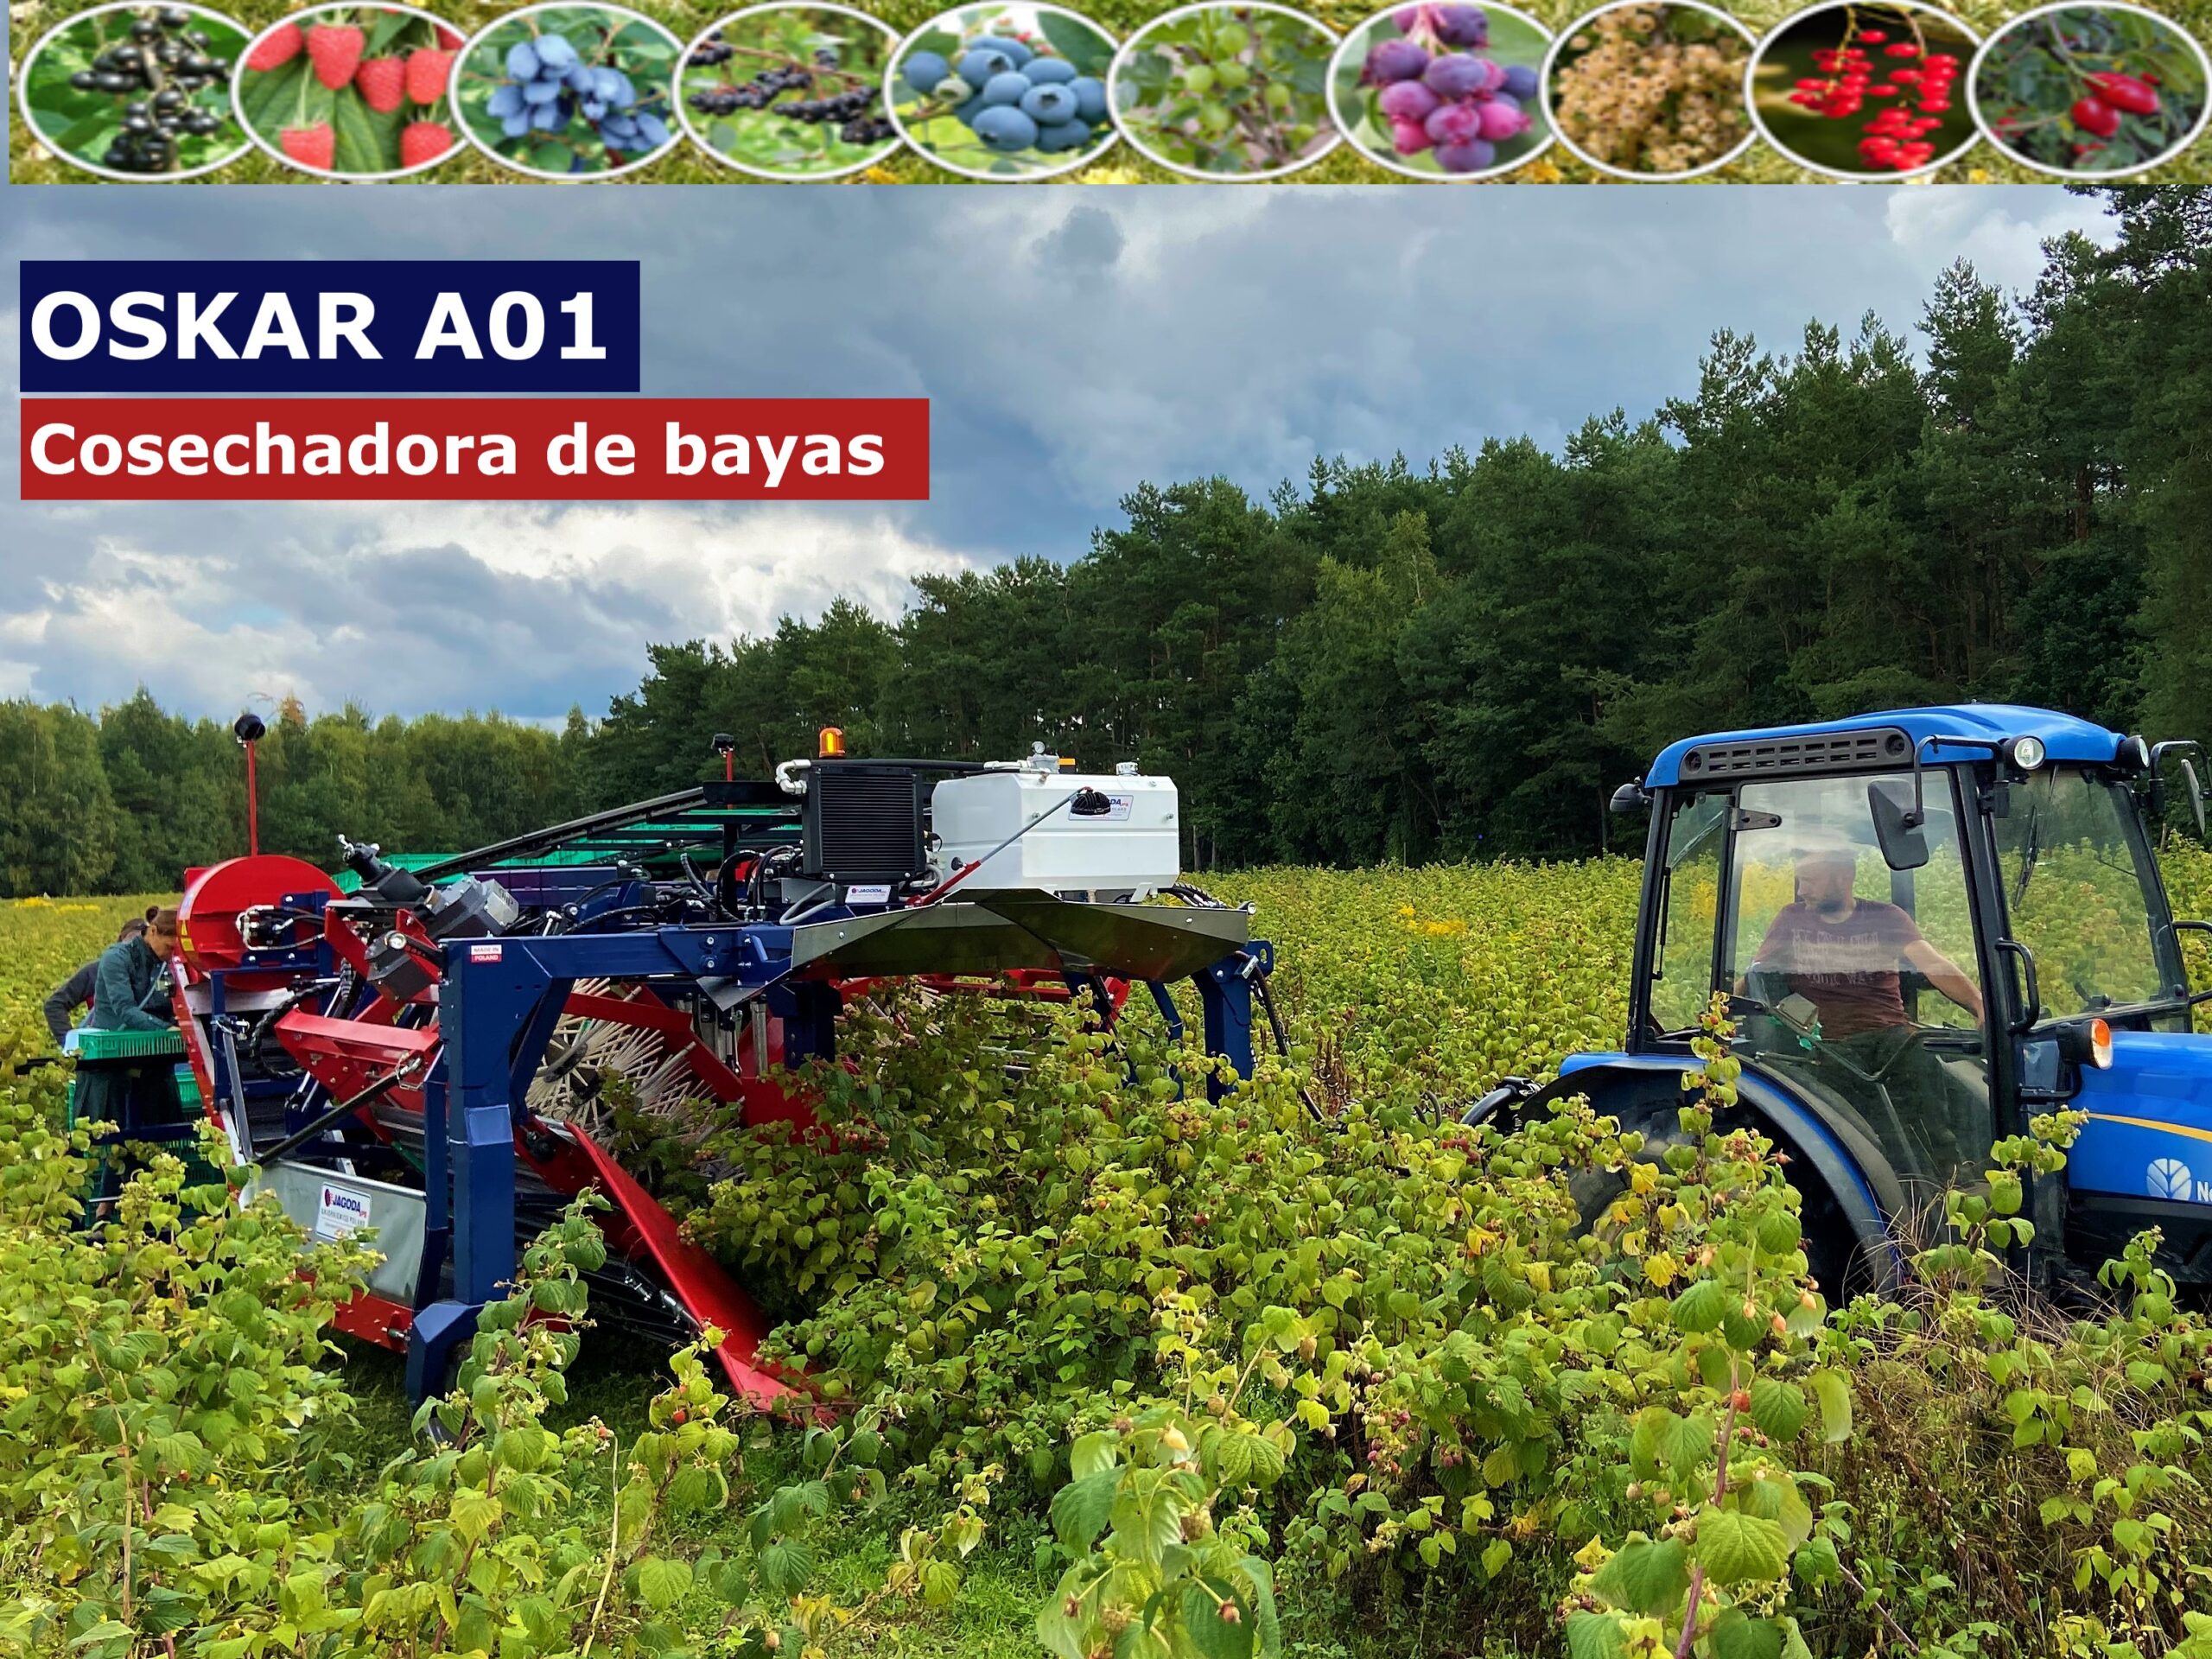 La cosechadora de media hilera JAREK 5R ha sido diseñada para la recogida de frambuesa de otoño en plantaciones sin apoyos como Polka, Polana, Polesie, Poemat, Polonez Octavia y otras variedades